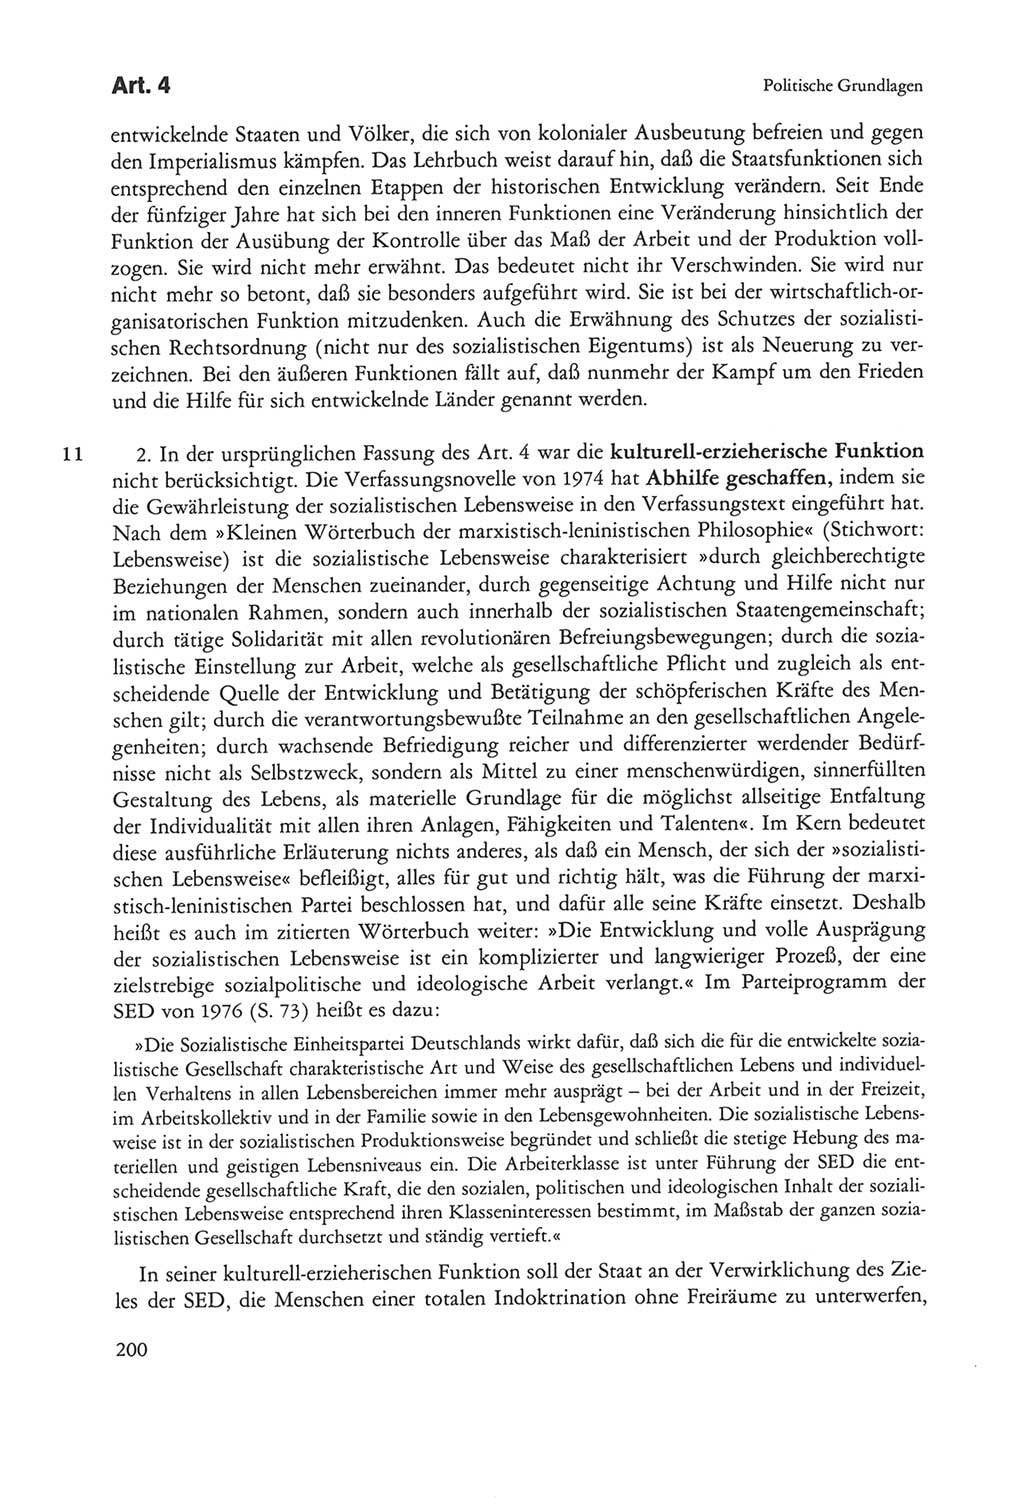 Die sozialistische Verfassung der Deutschen Demokratischen Republik (DDR), Kommentar mit einem Nachtrag 1997, Seite 200 (Soz. Verf. DDR Komm. Nachtr. 1997, S. 200)